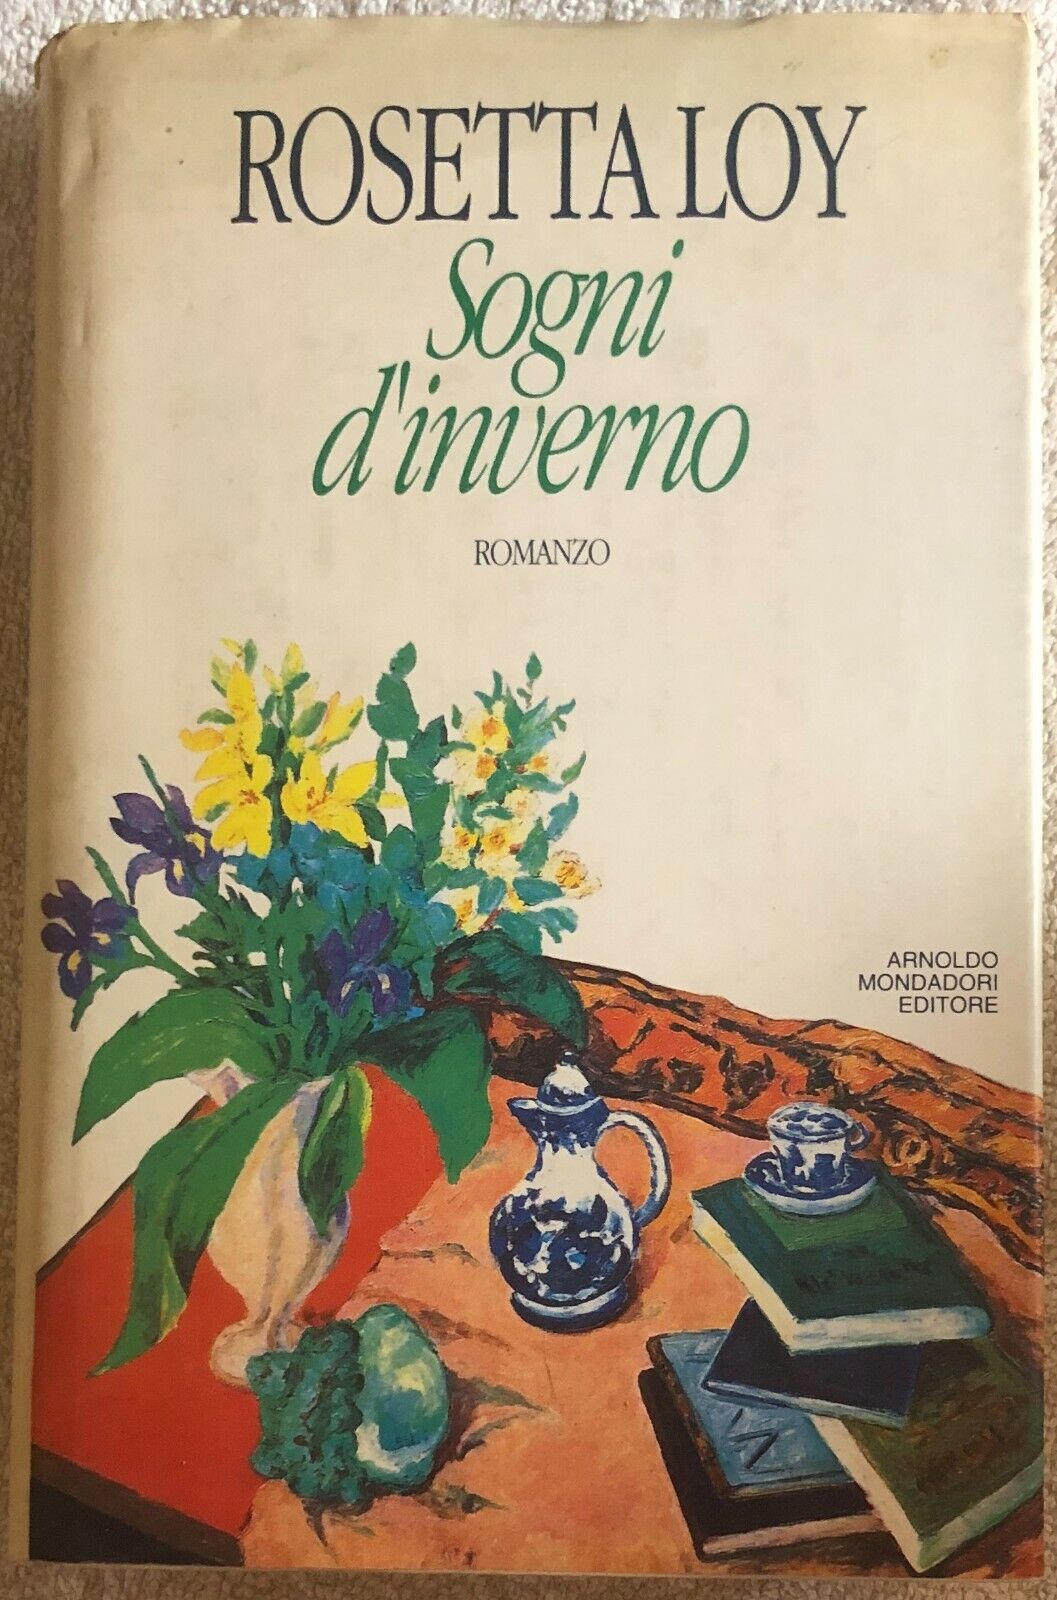 Sogni d'inverno di Rosetta Loy,  1992,  Arnoldo Mondadori Editore